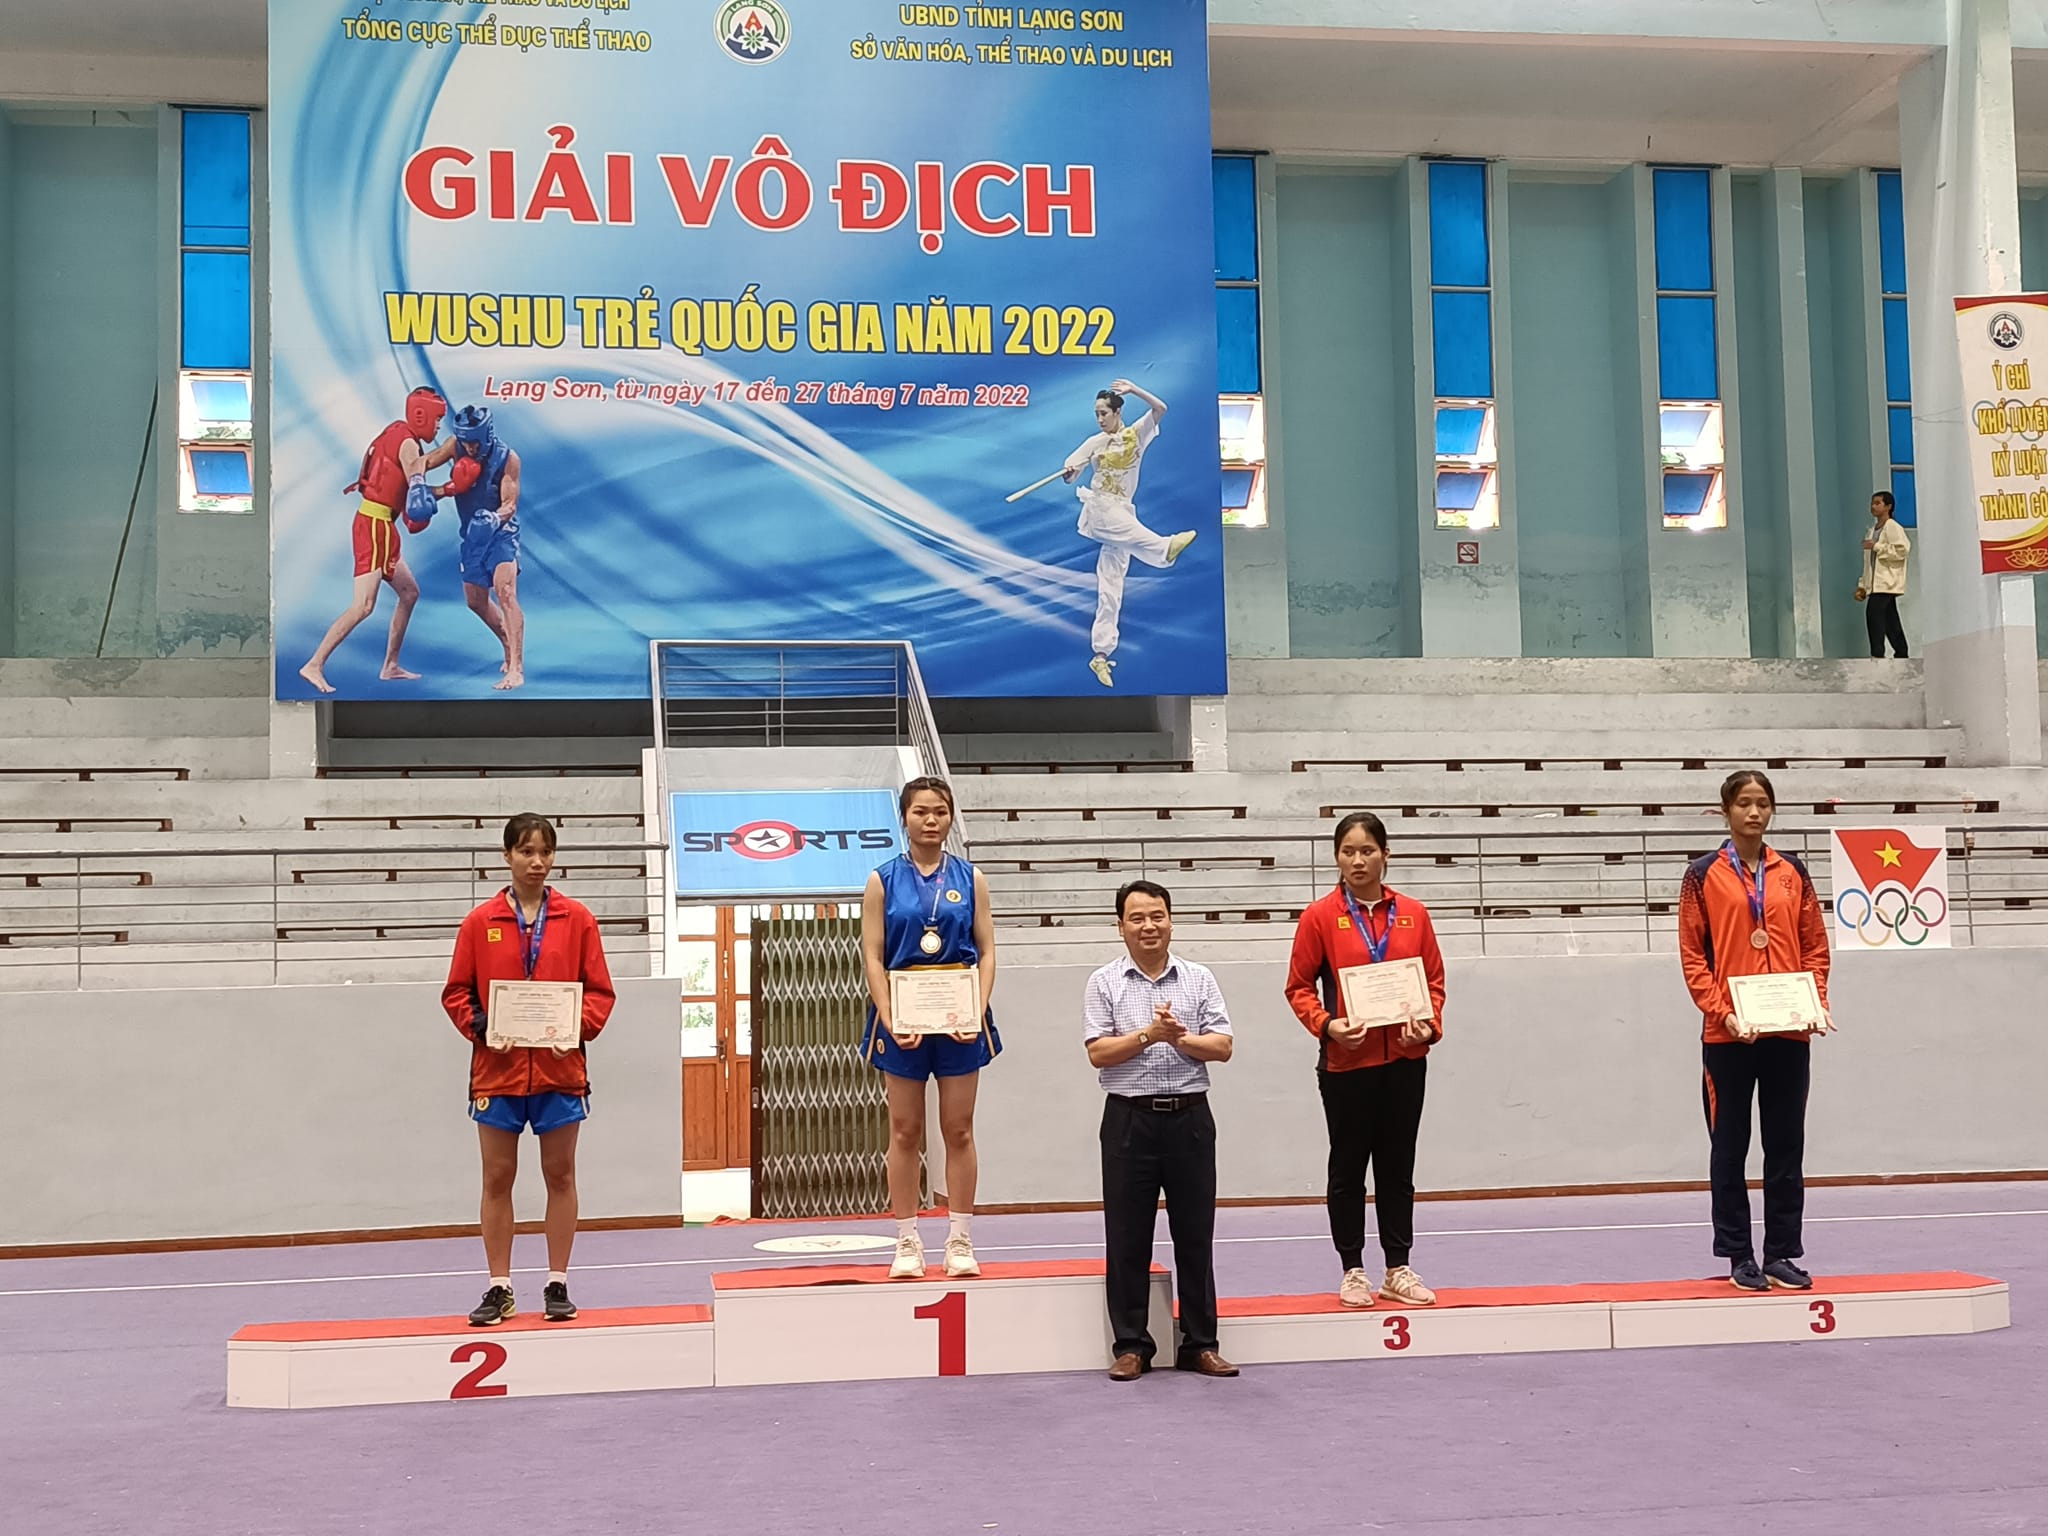 VĐV Lý Thị Oanh đoàn Lạng Sơn nhận huy chương vàng nội dung Sanda nữ hạng cân 70kg nhóm A